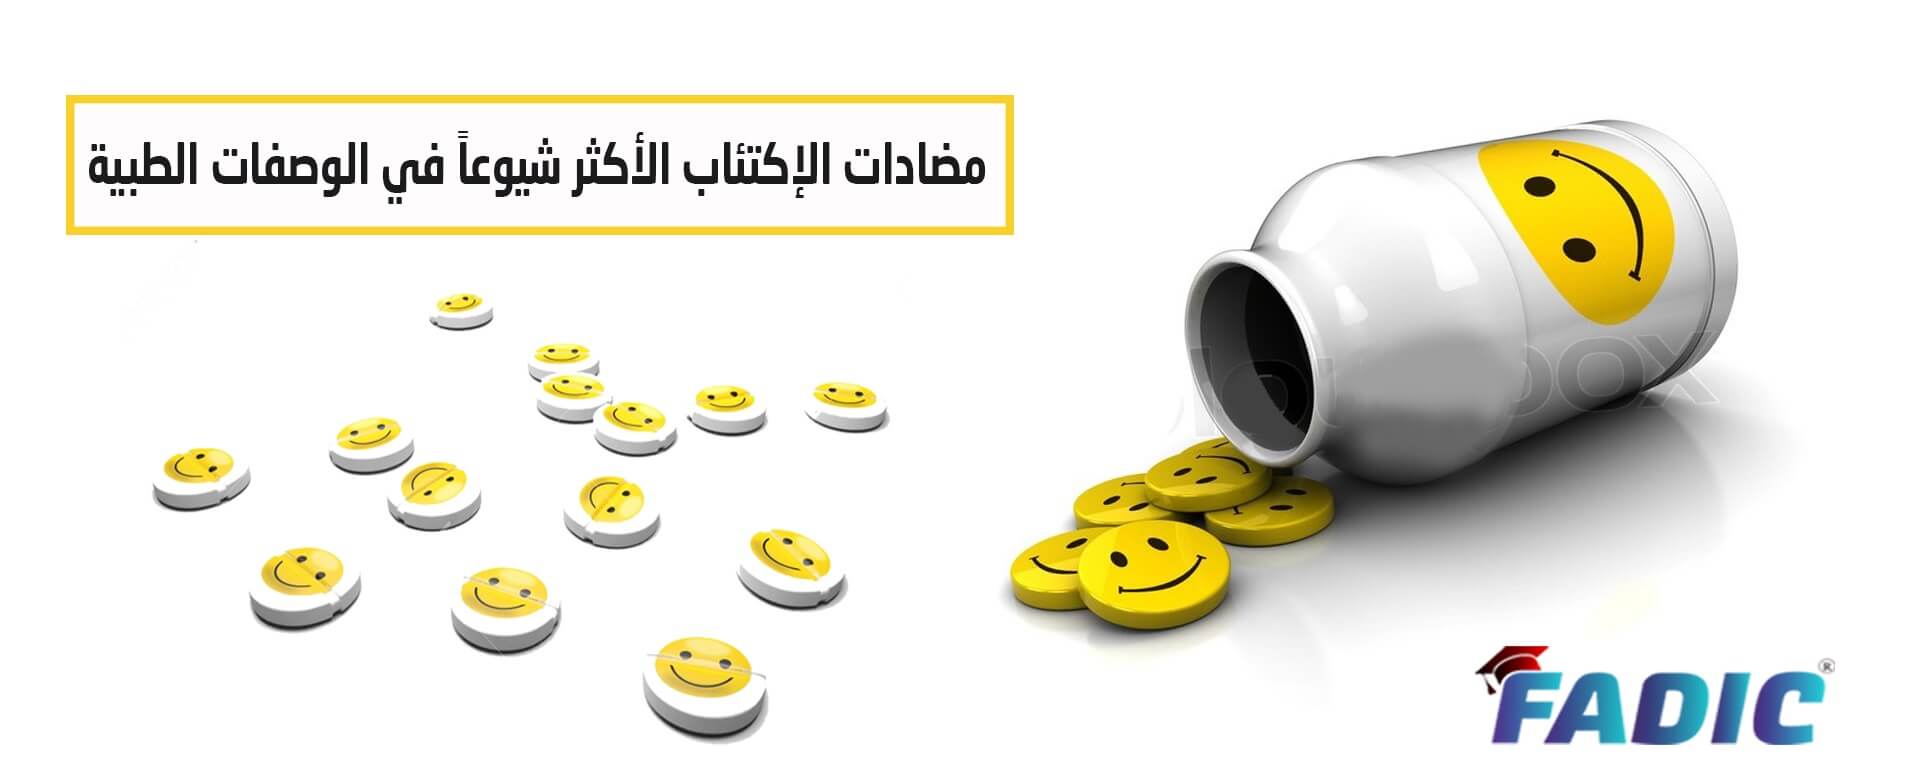 المتشرد النادي إبريق  تعرف علي أشهر 10 أدوية في علاج الاكتئاب في الوصفات اليومية من خلال مدونة  فادك العربية